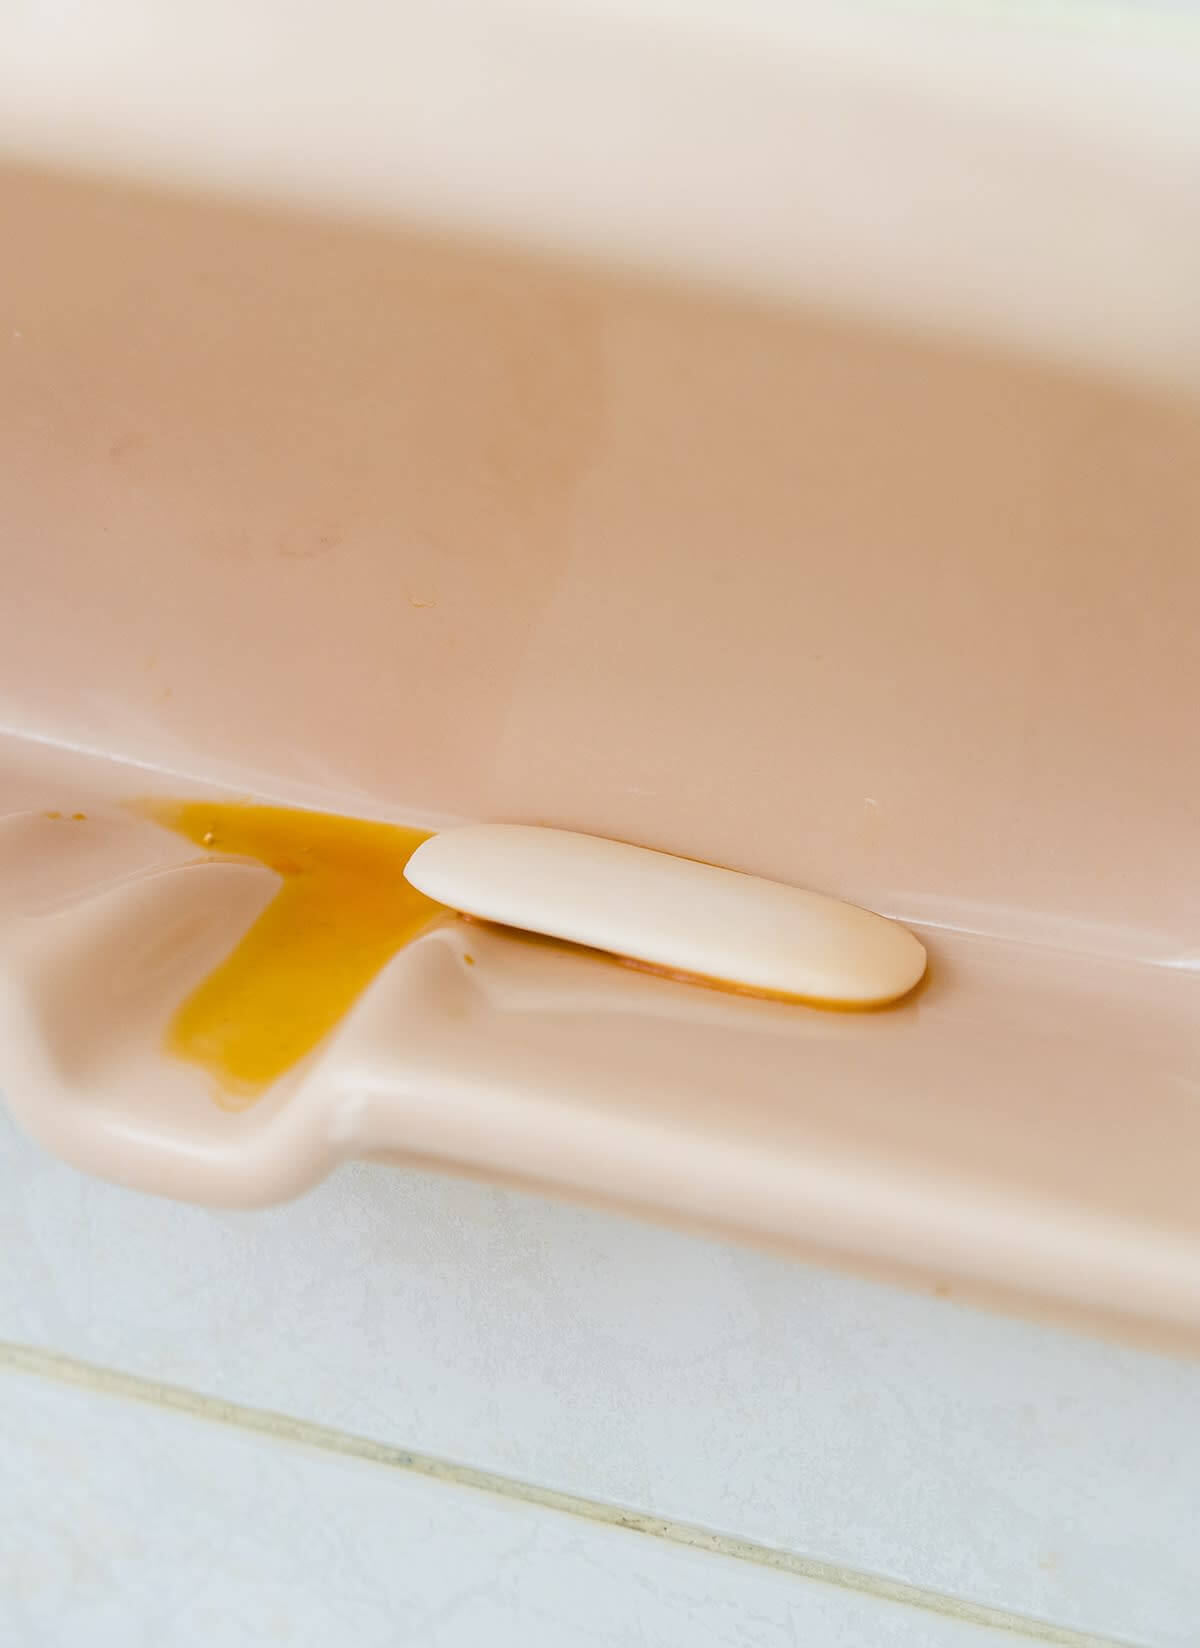 faq_orange-soap-in-orange-bathroom-2018_archival-inkjet-print_28x20cm-8x11-in.-